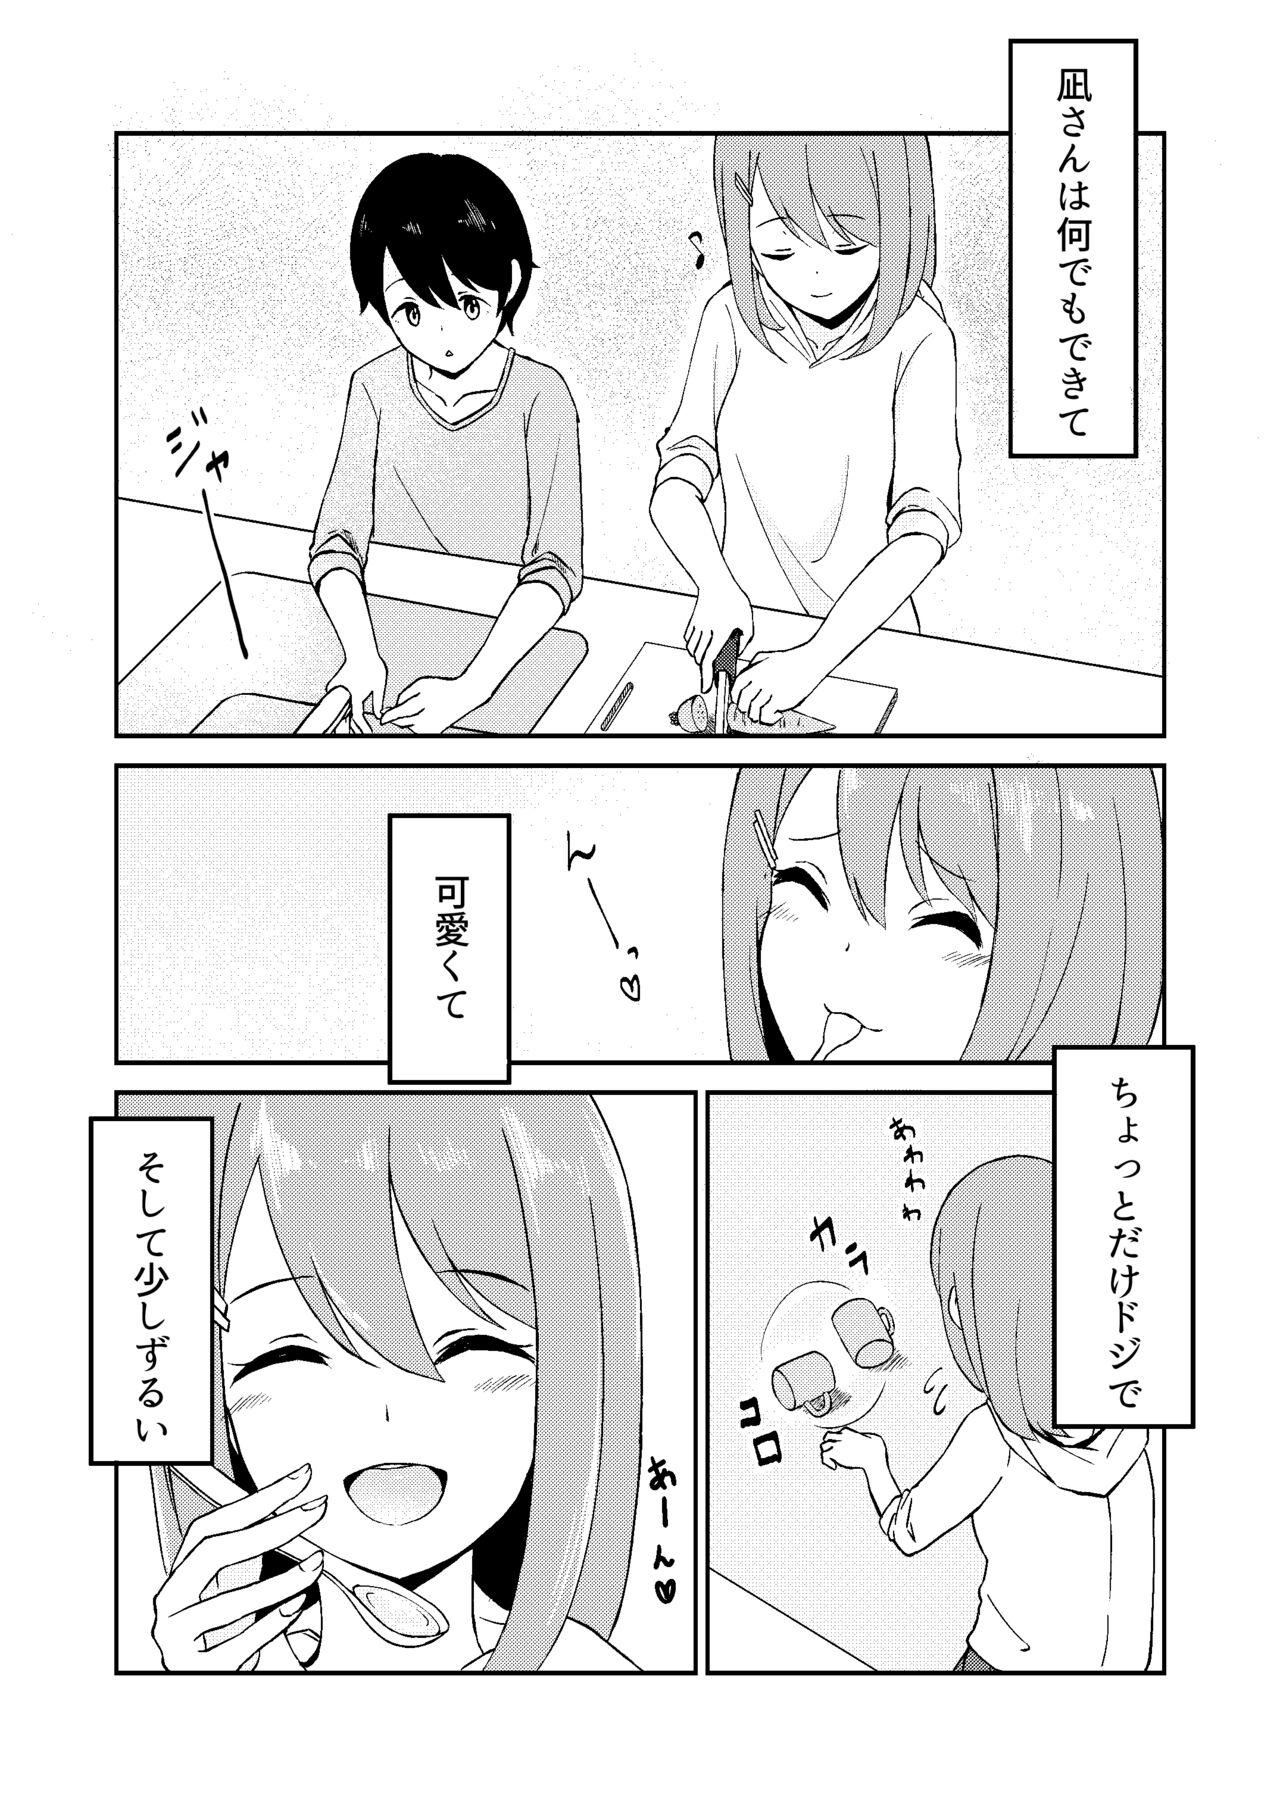 Strap On Kimi ga Mienakutatte - Original Dorm - Page 4